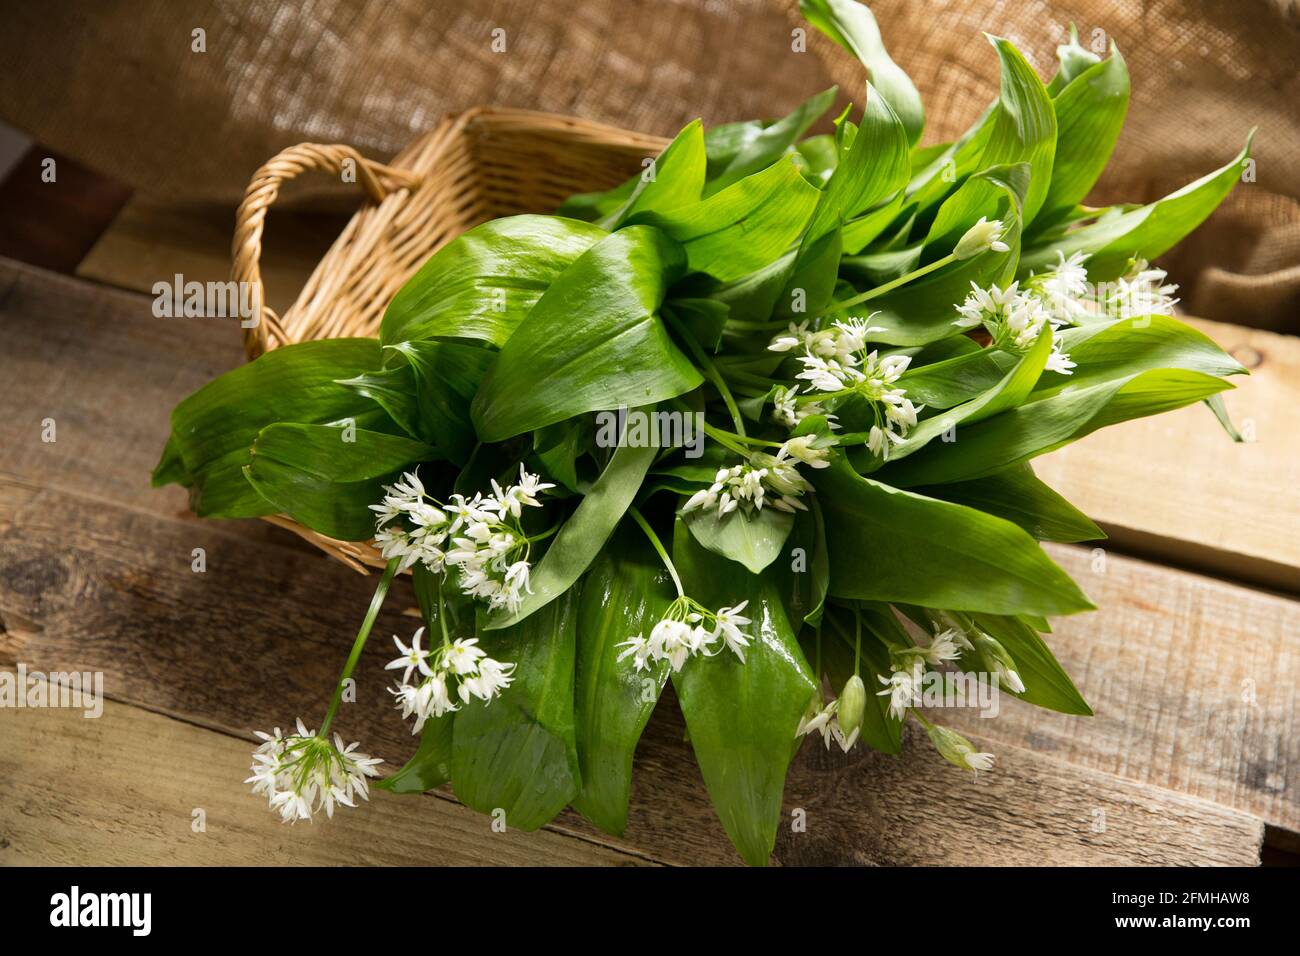 Ail sauvage à fleurs, Allium ursinum, également connu sous le nom de ramsons, qui a été foré pour faire du pesto à l'ail sauvage. Il convient de faire preuve d'une grande prudence Banque D'Images